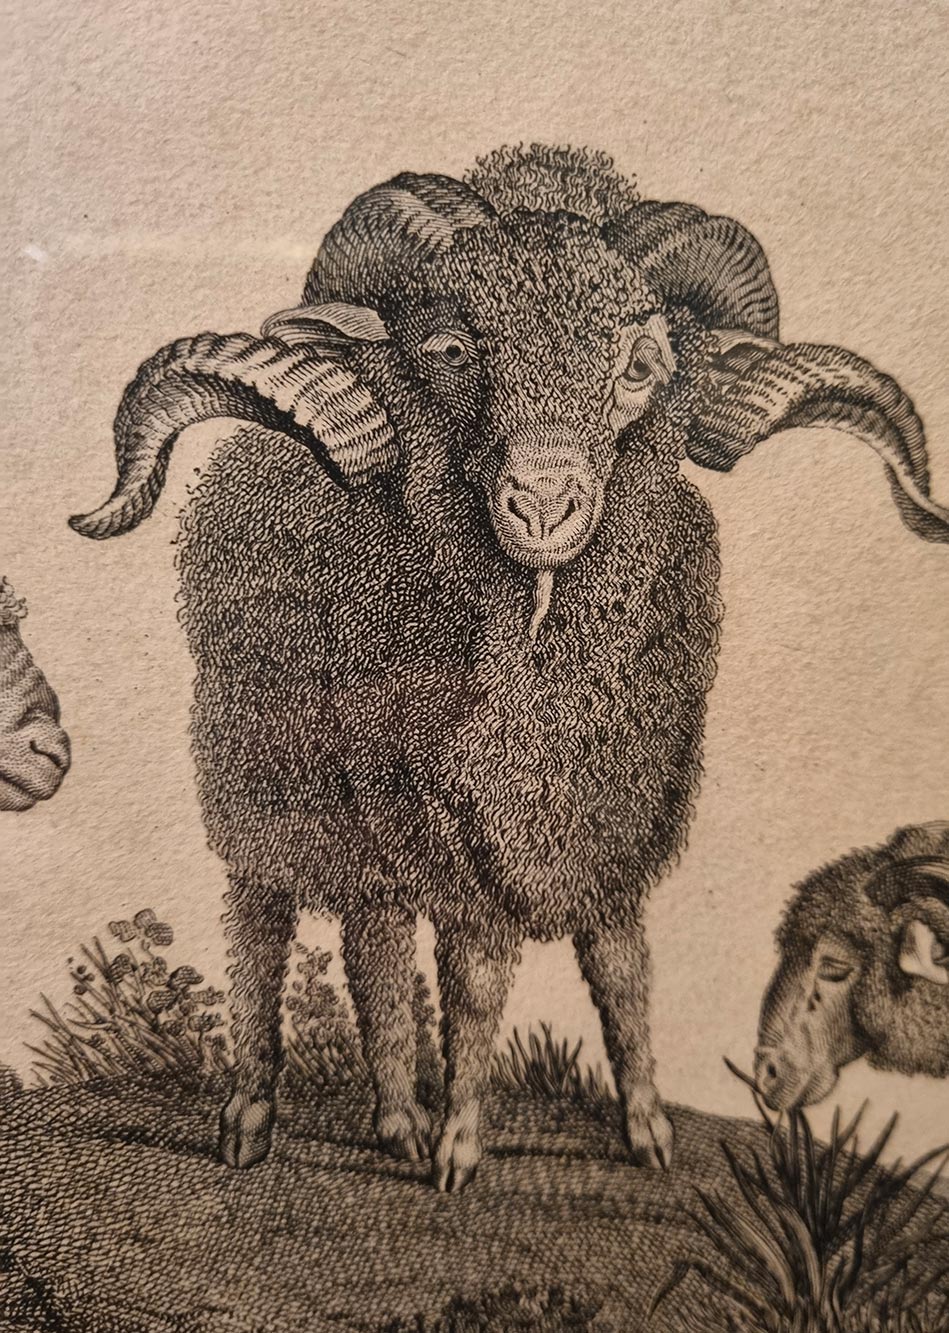 De Bonne Facture - Musée des Archives nationales à Paris, France - Tricolor - Notre engagement pour les laines françaises